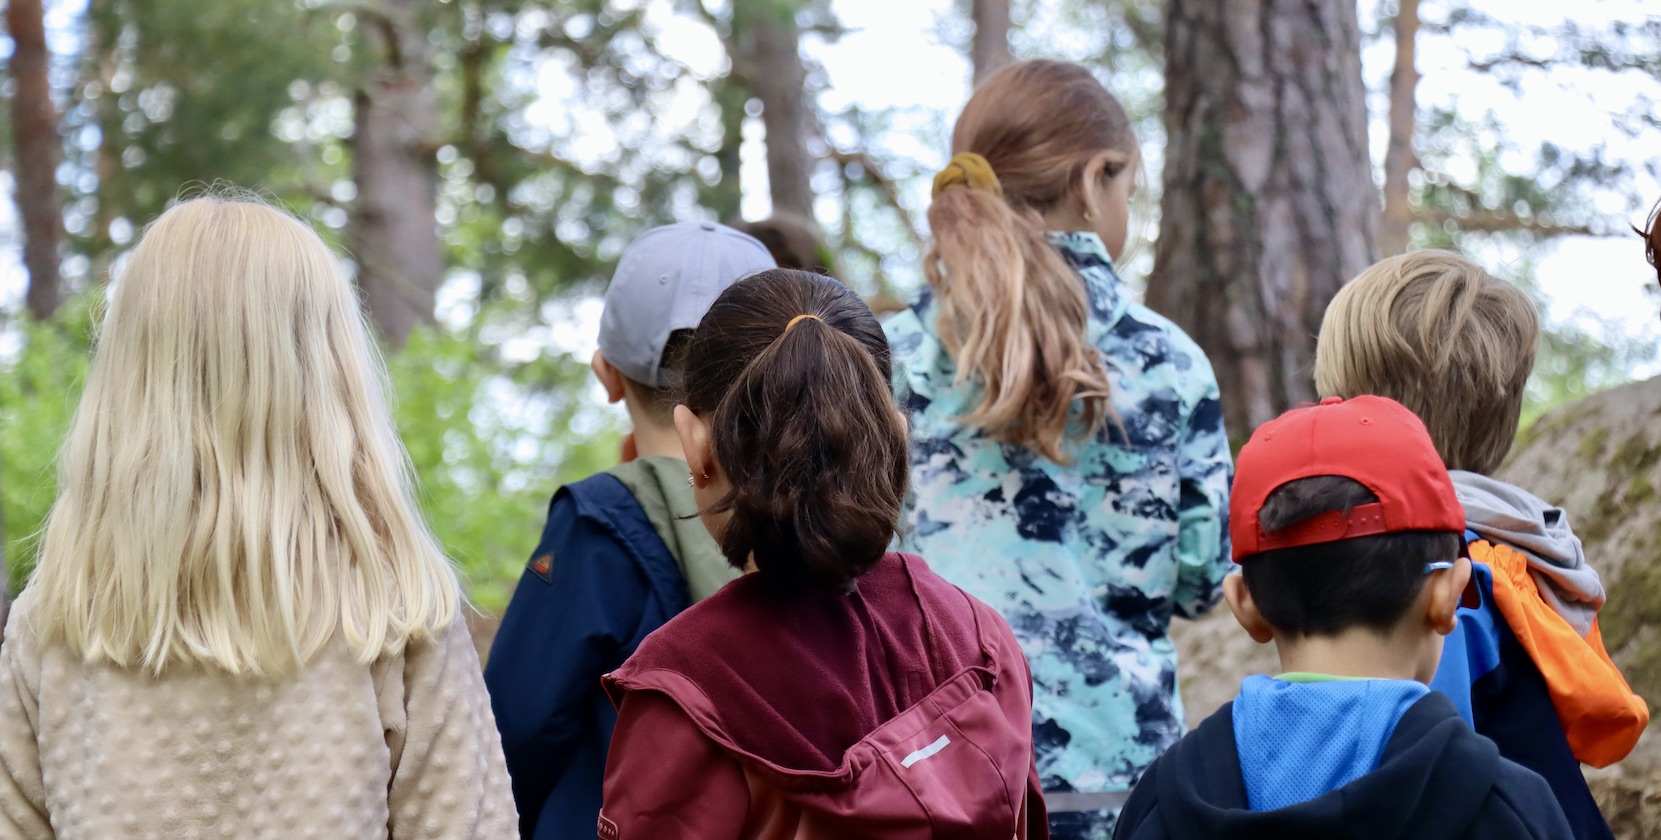 Barn i förskoleåldern, iklädda utomhuskläder, står tillsammans och lyssnar på två tjejer i 18-årsåldern utklädda till rumpnissar i skogen. 